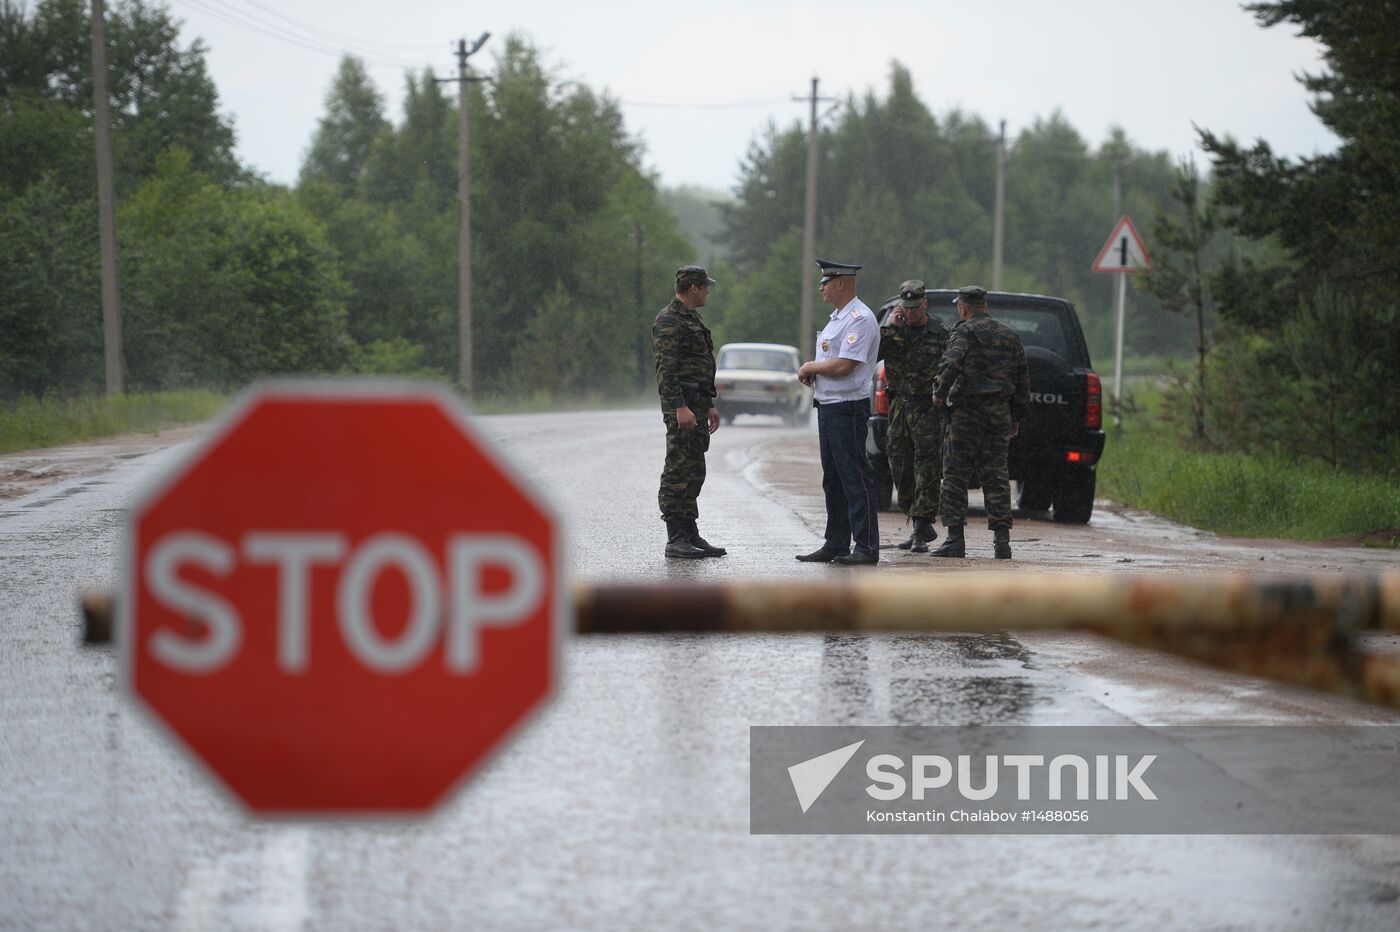 Security regime stepped up in Udomlya, Tver Region